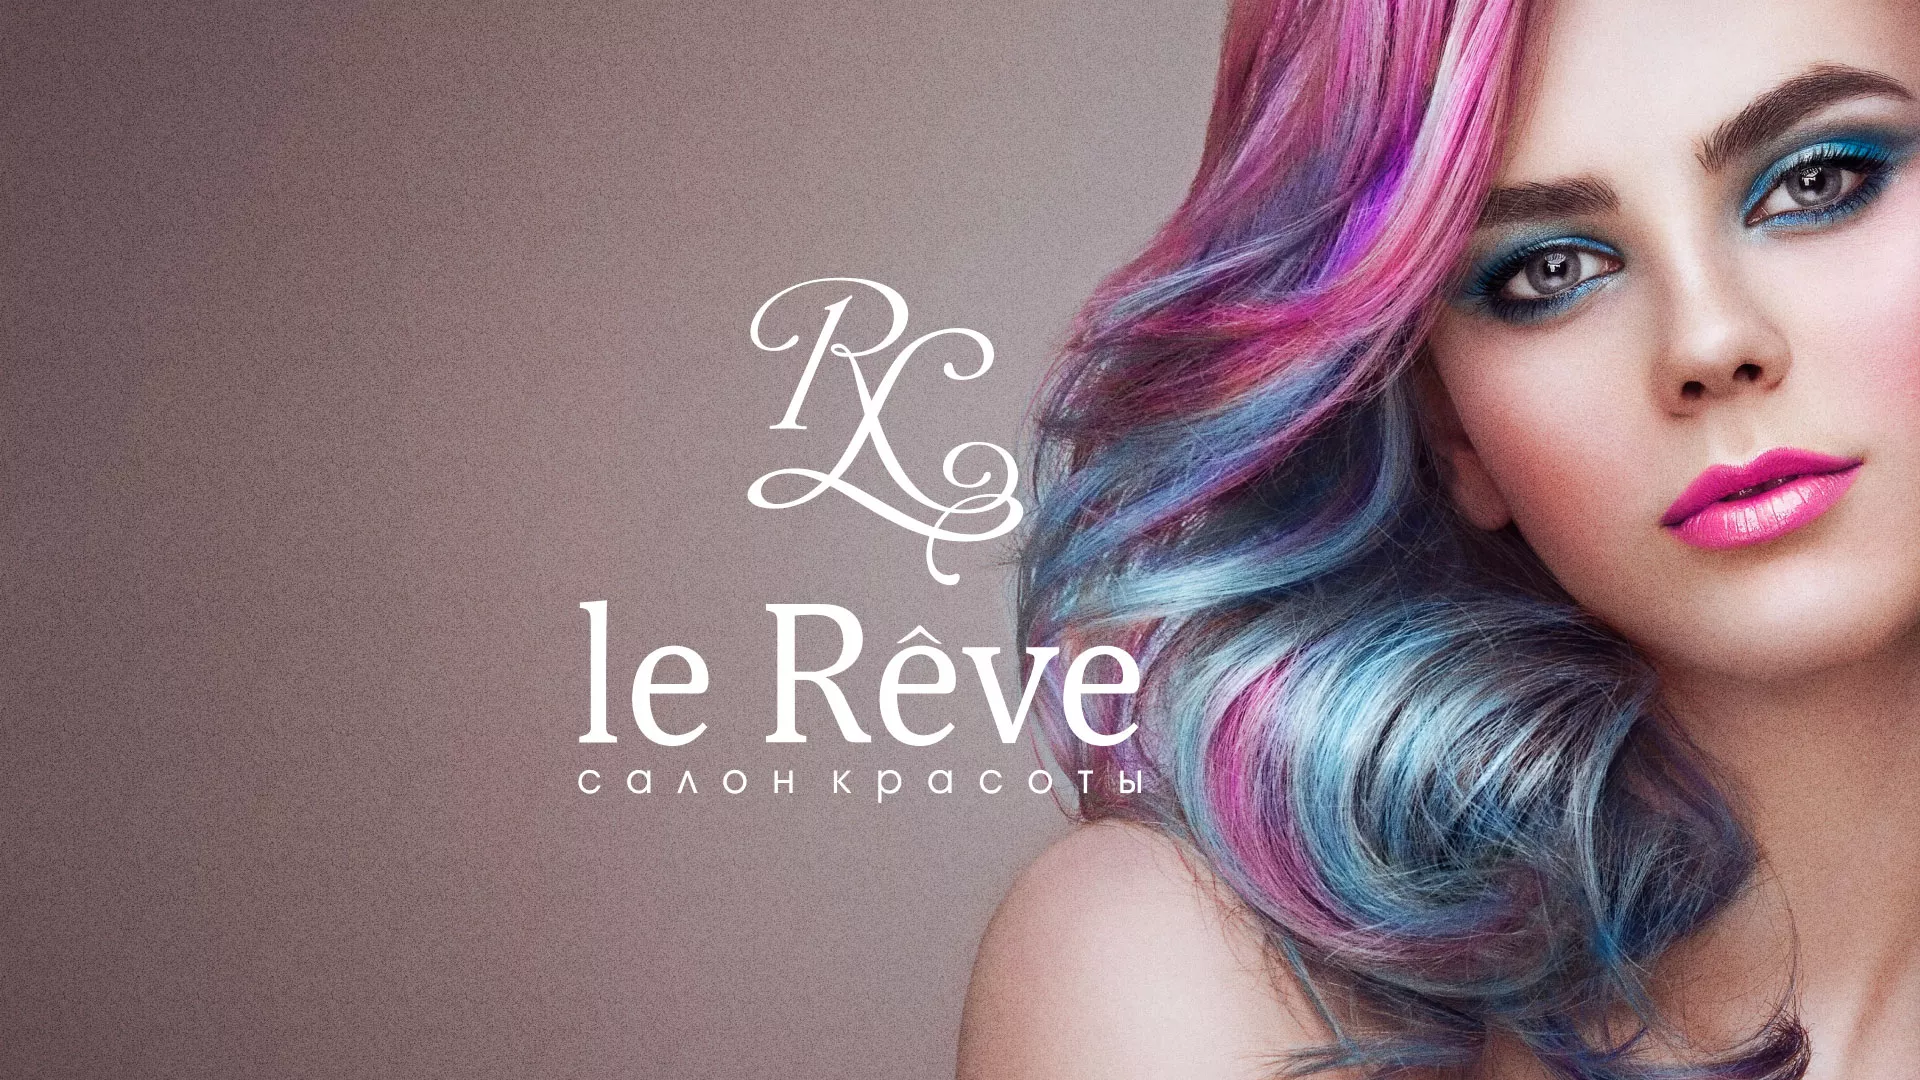 Создание сайта для салона красоты «Le Reve» в Советске